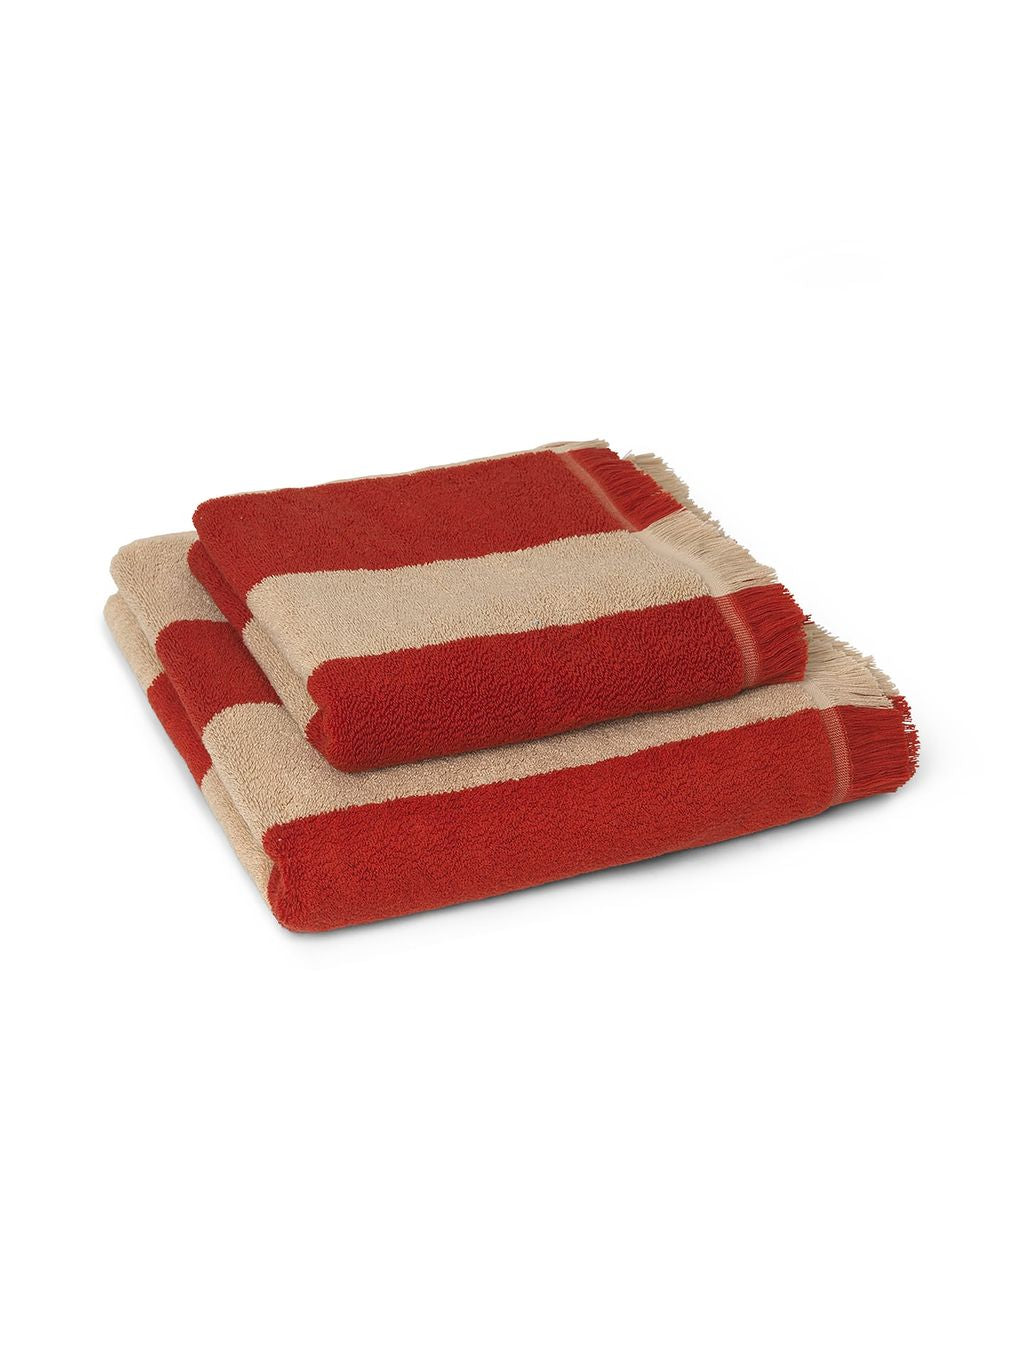 Ferm Living Alee Bath Towel 70x140 Cm, Light Camel/Red